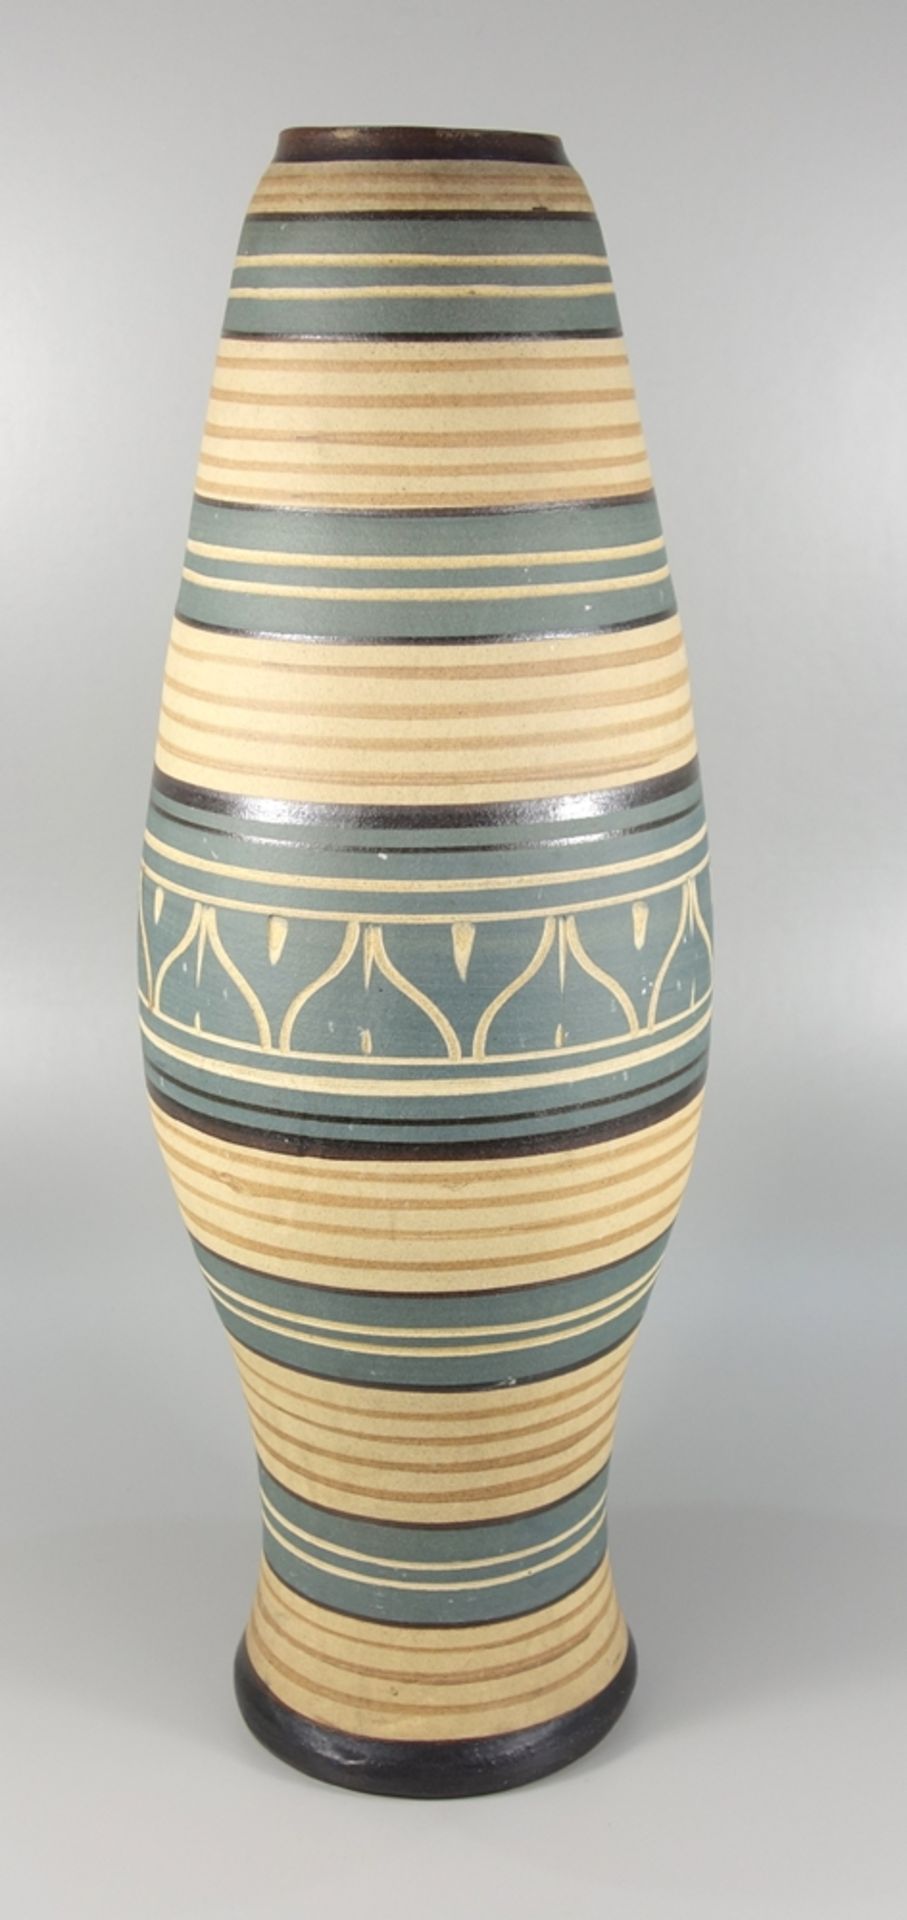 Bodenvase, Studio- Keramik, 1960er Jahre, mittig gebauchter Korpus mit geometrischem Ritzdekor,